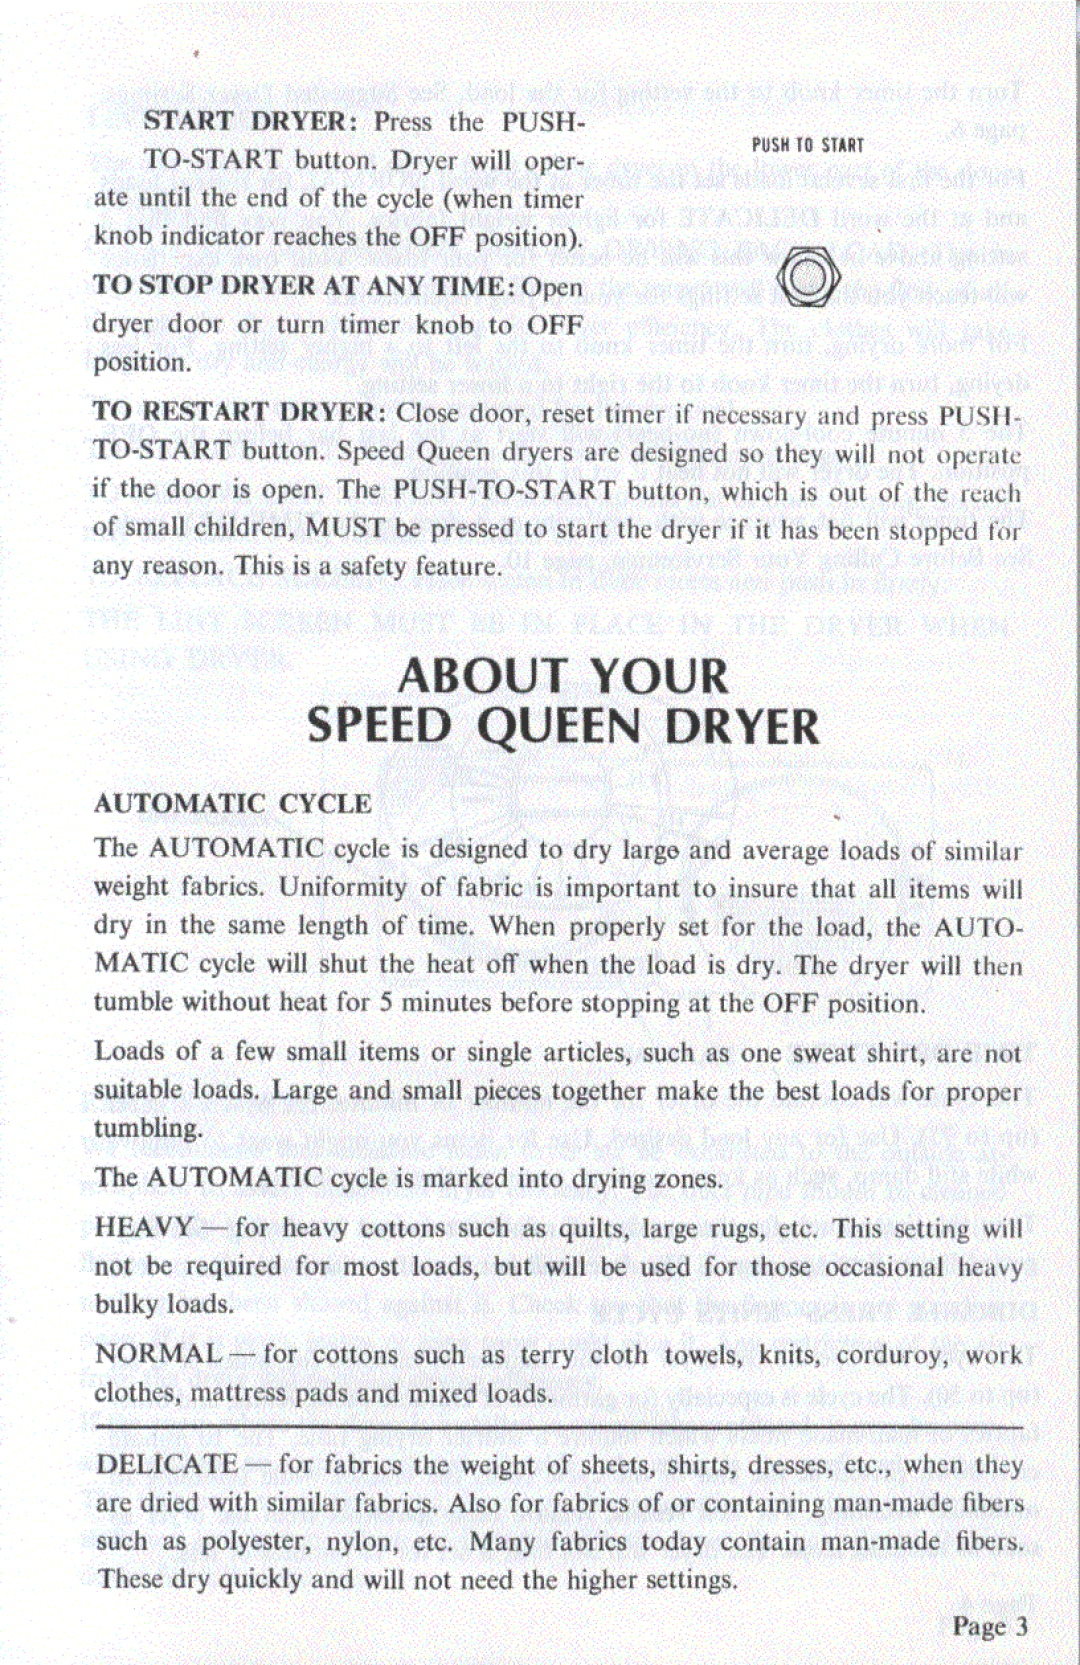 Speed Queen HE4070, HG4080 manual 